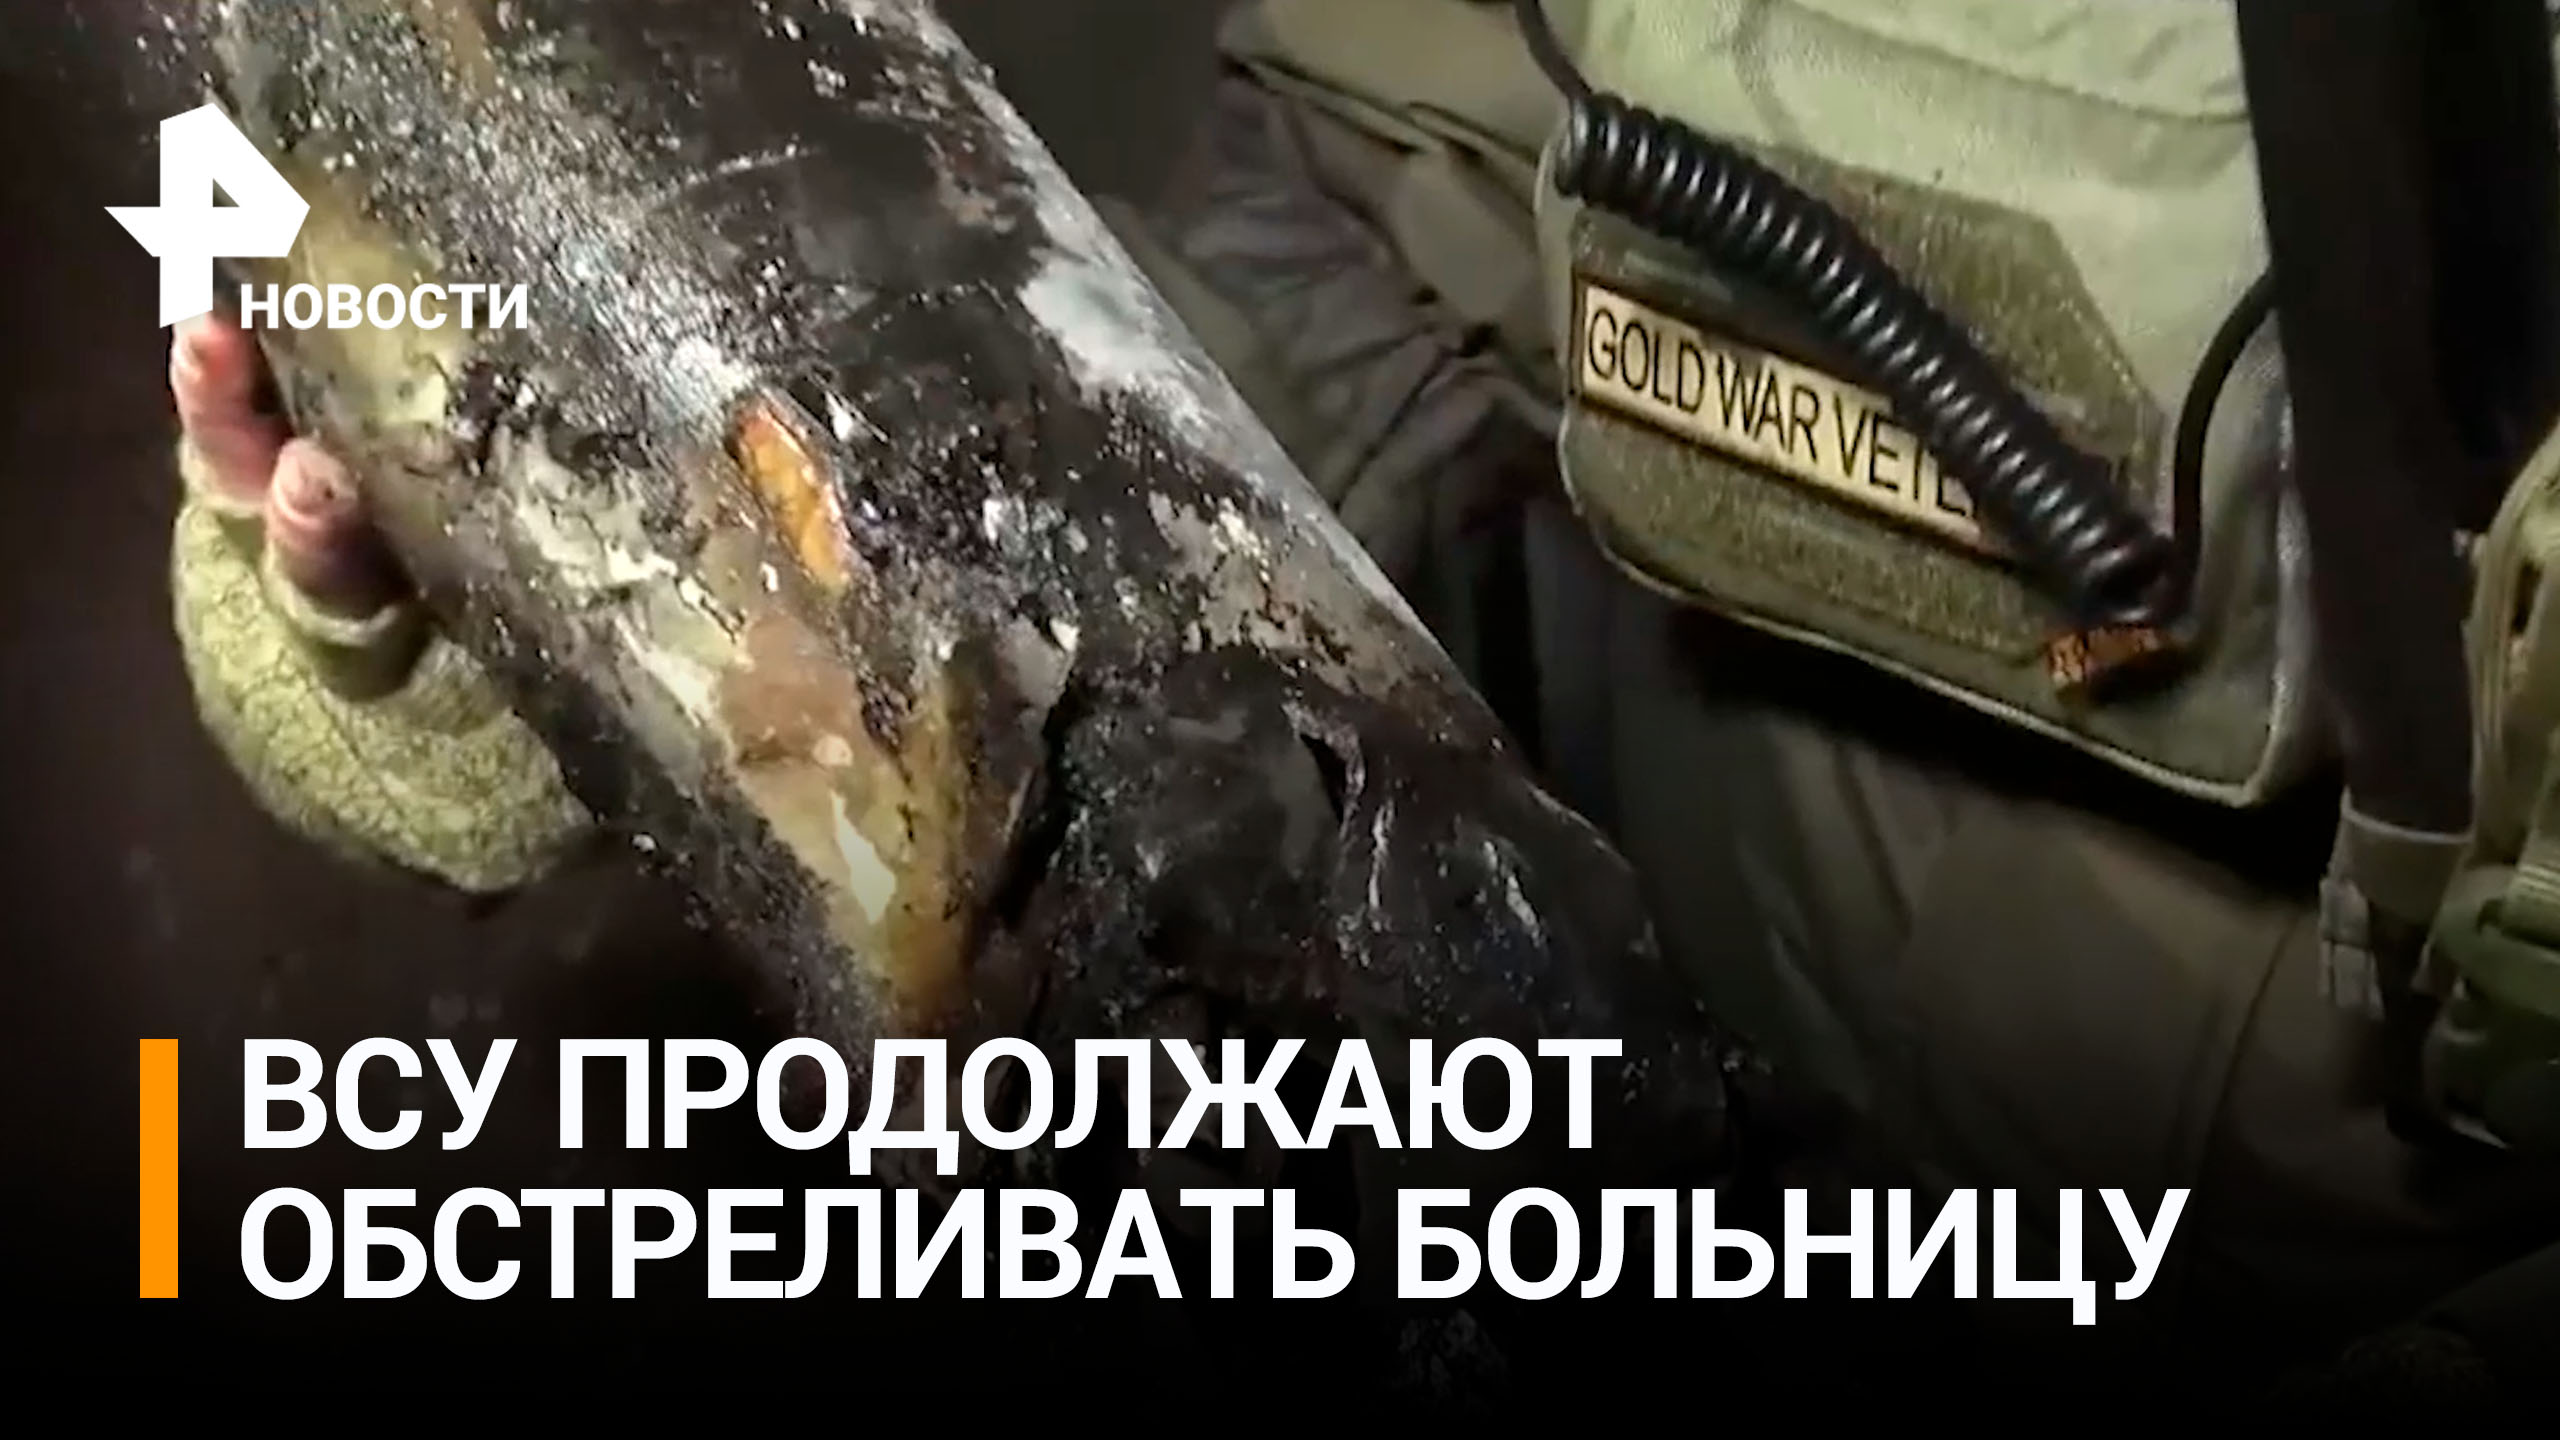 ВСУ обстреляли больницу: боевики выпустили 15 ракет из РСЗО по Донецку / РЕН Новости